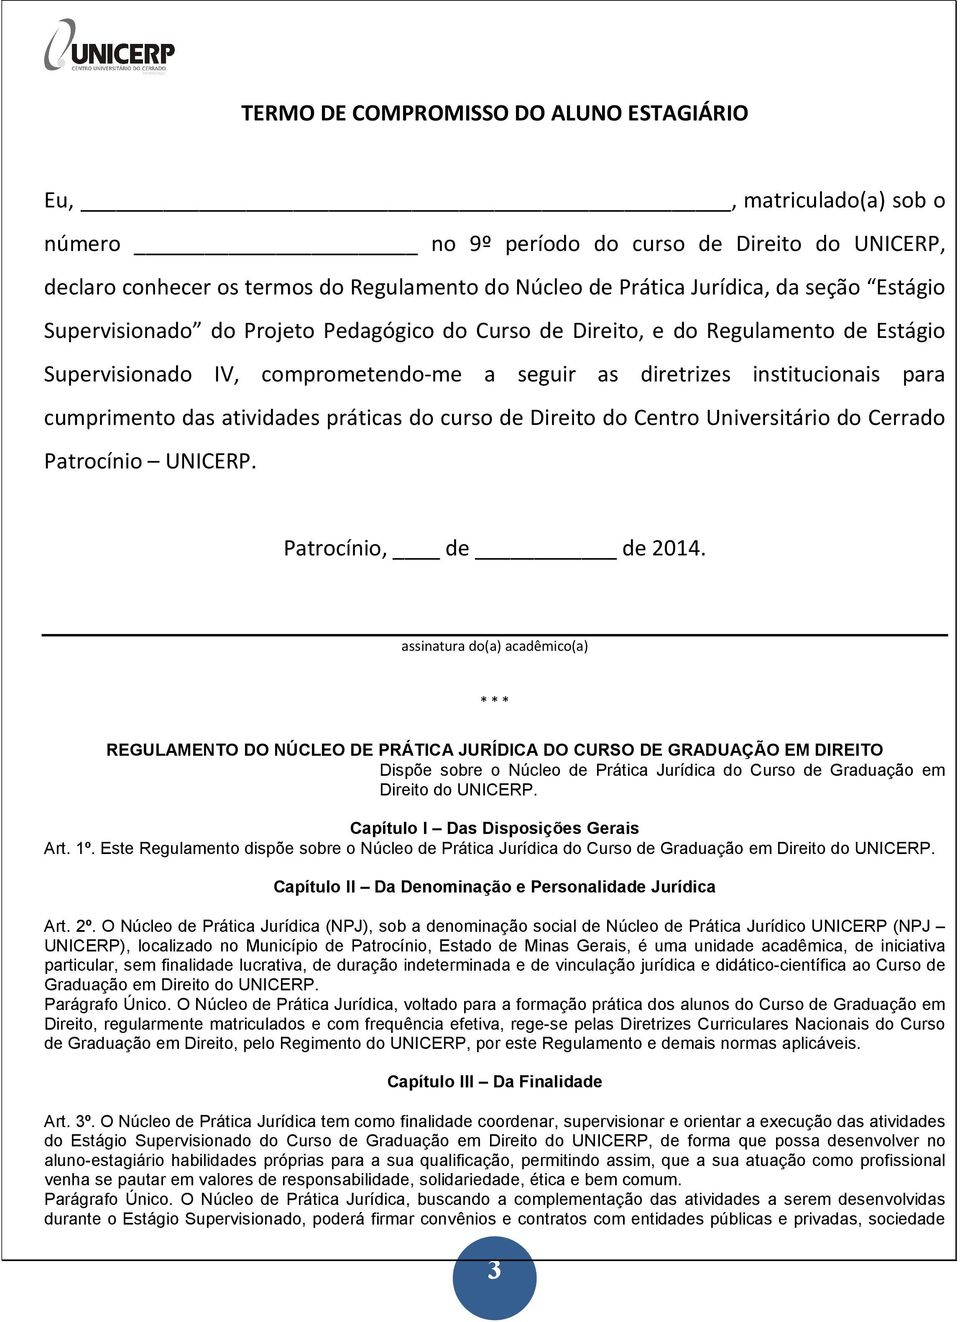 atividades práticas do curso de Direito do Centro Universitário do Cerrado Patrocínio UNICERP. Patrocínio, de de 2014.